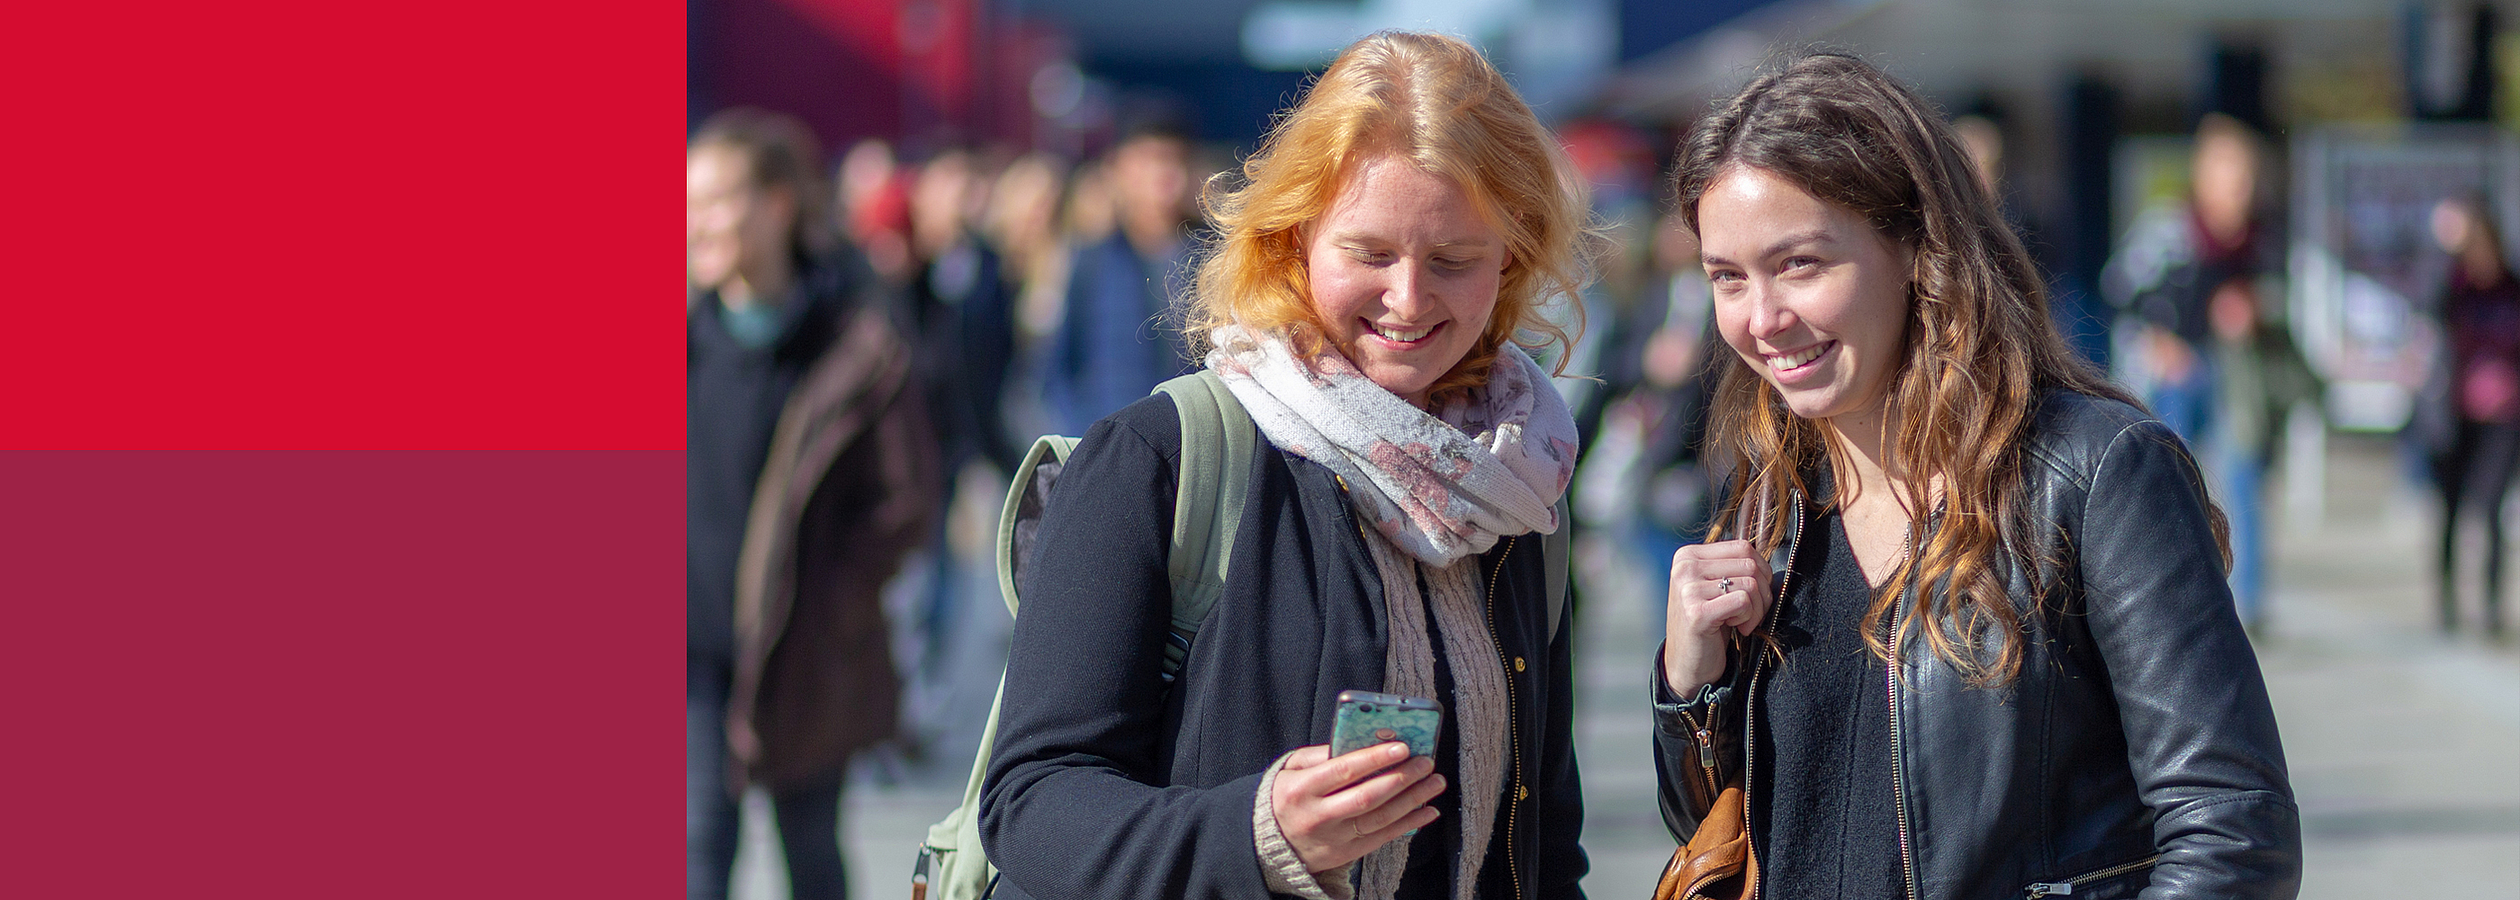 Zwei junge Frauen stehen auf dem Boulevard der Universität Bremen, eine schaut auf ihr Handy, als würde sie etwas suchen.